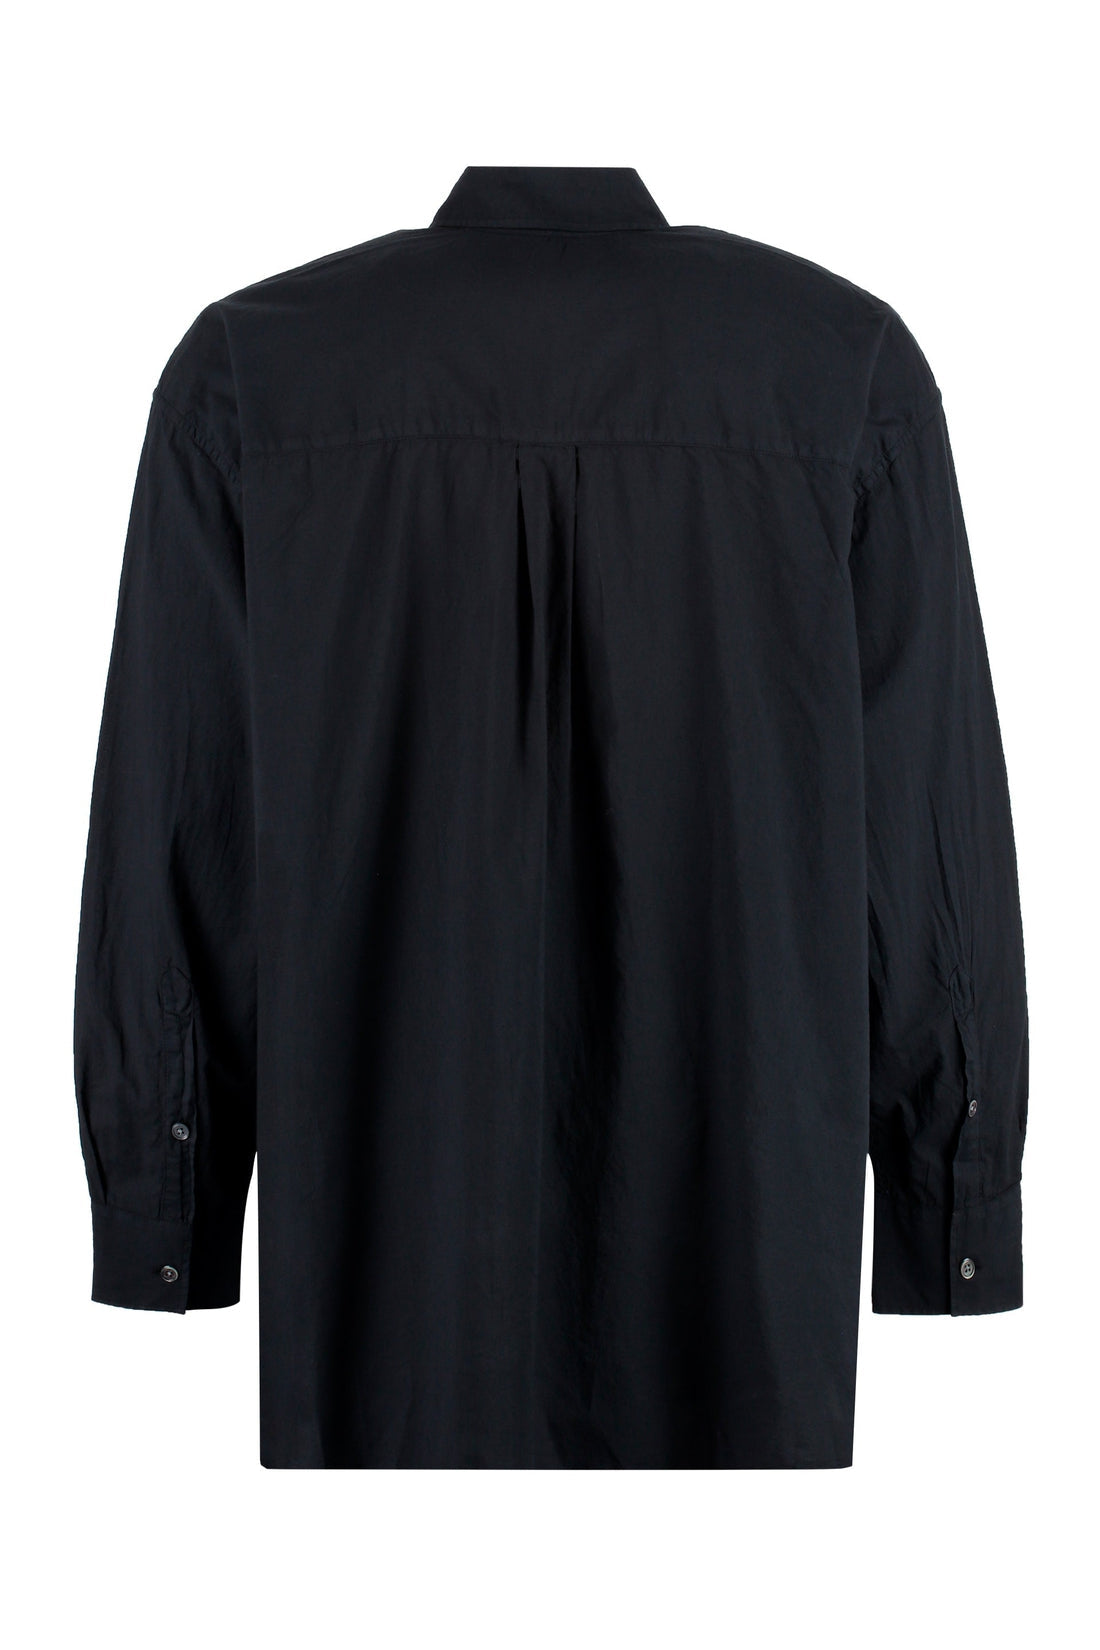 Our Legacy-OUTLET-SALE-Borrowed BD cotton button-down shirt-ARCHIVIST